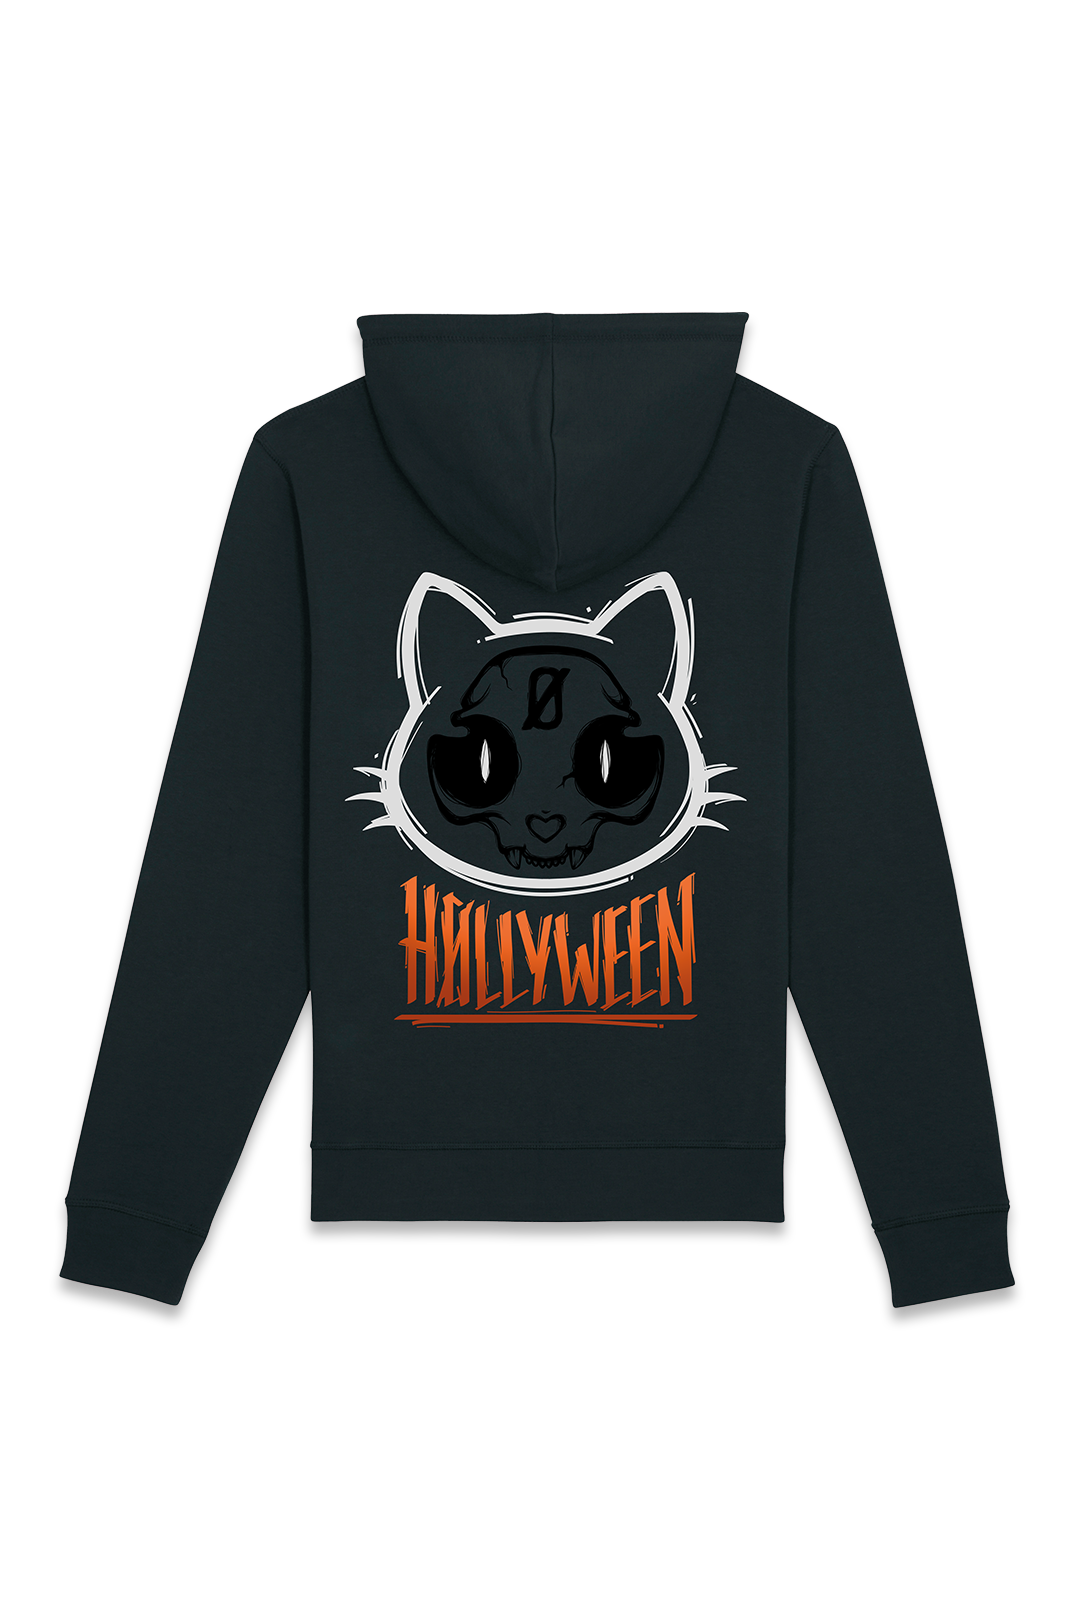 Hoodie - H0llyween - Cat